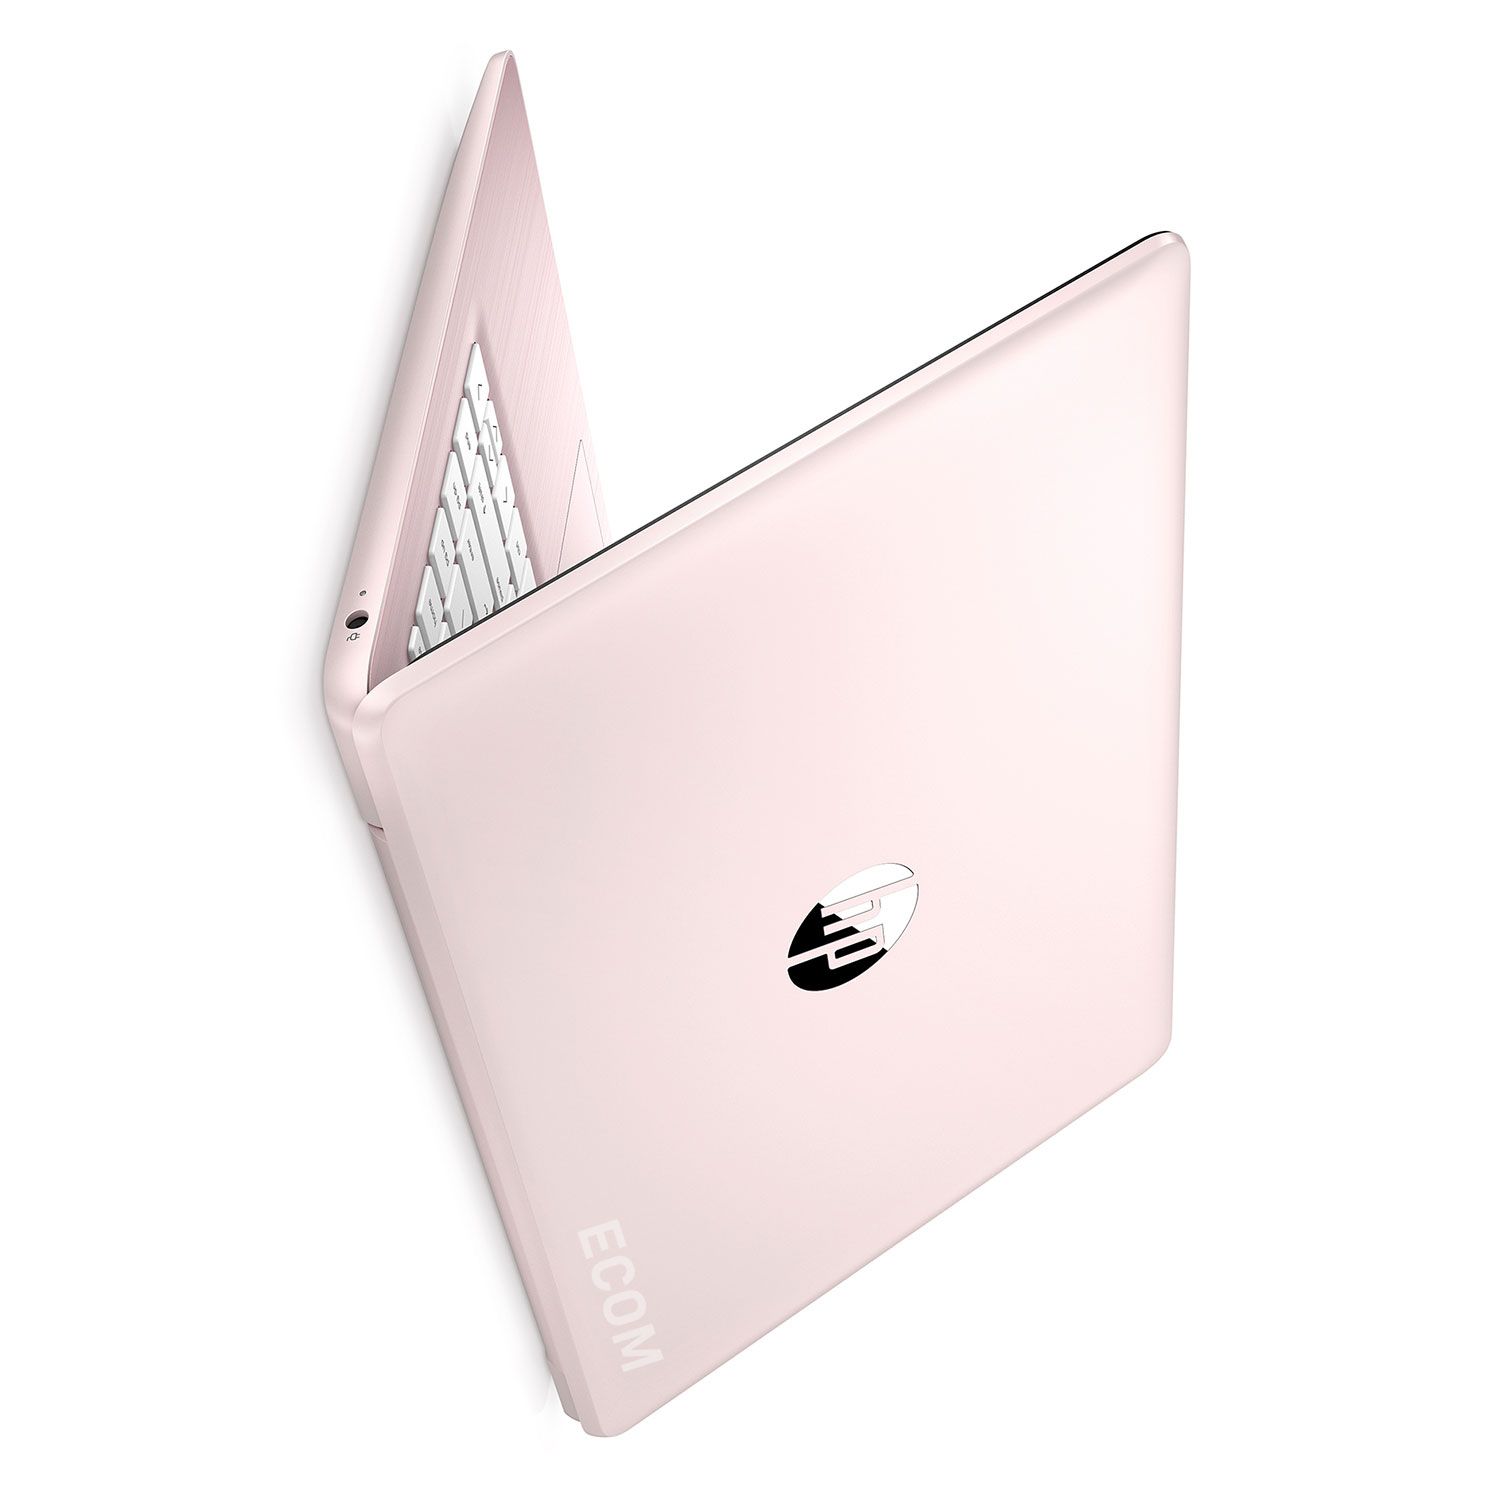 Notebook HP Stream DS12 AMD A6 9220e / 14″ HD / Windows Rosa | ECOMLAPTOPS